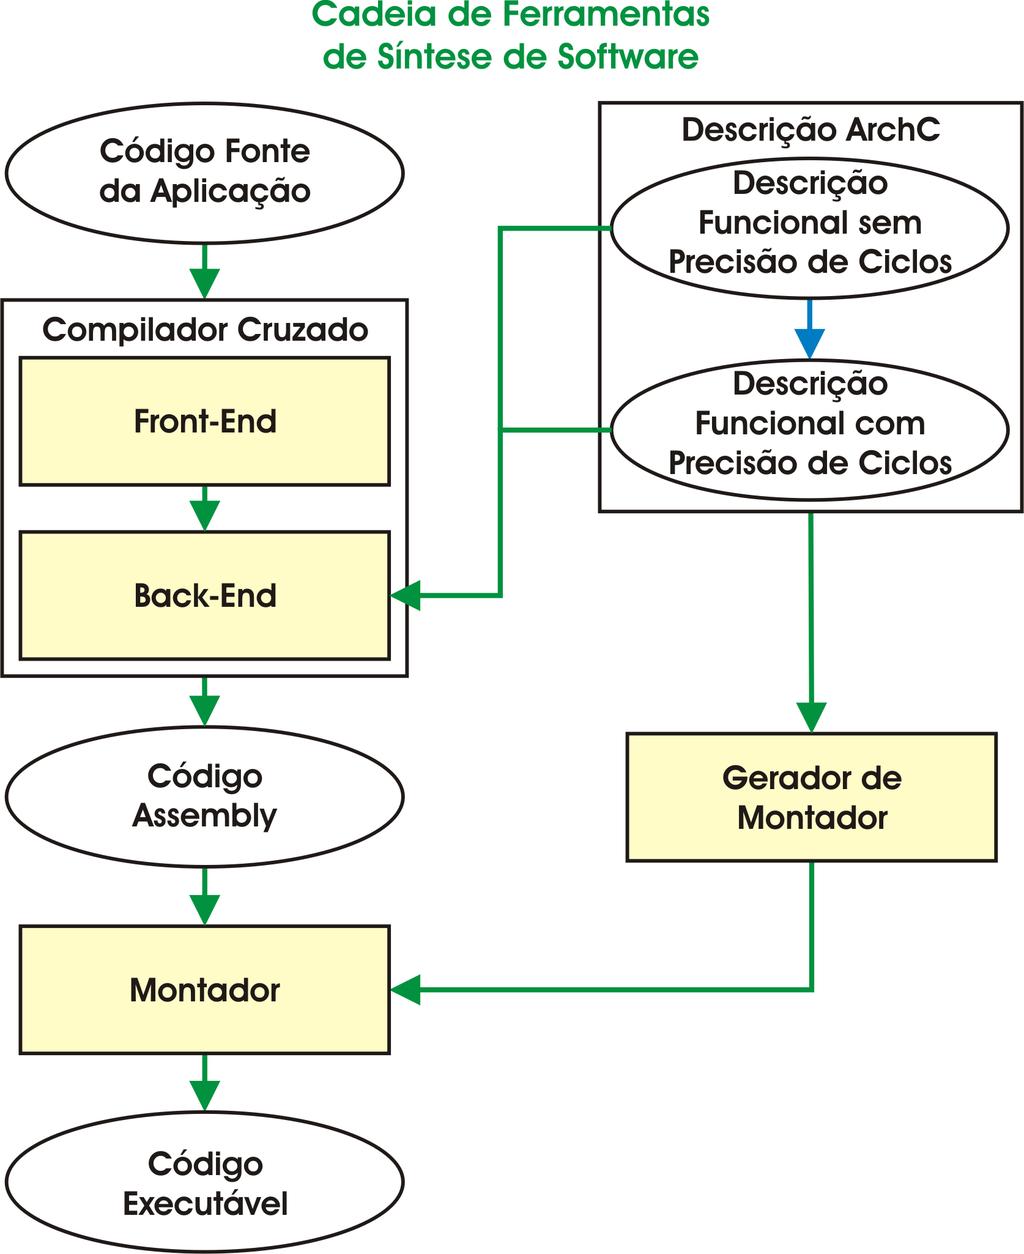 19 Figura 2: Fluxo de síntese de software do compilador precisa extrair informações automaticamente a partir da descrição ADL, seja para seleção de instruções (semântica a partir do modelo funcional